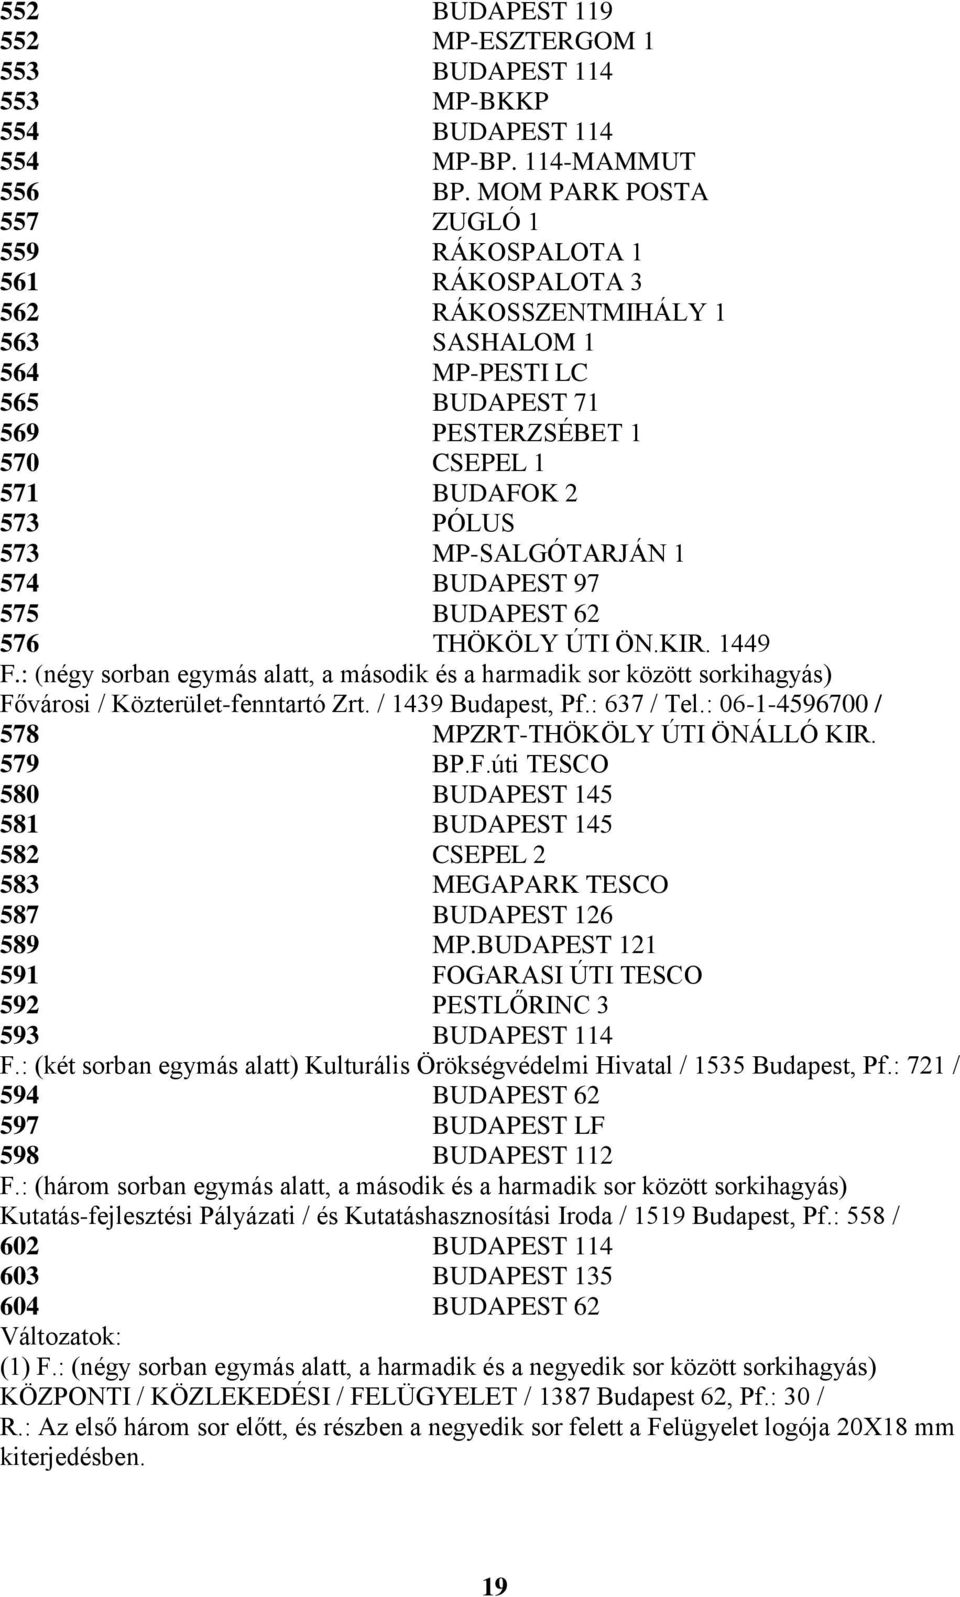 MP-SALGÓTARJÁN 1 574 BUDAPEST 97 575 BUDAPEST 62 576 THÖKÖLY ÚTI ÖN.KIR. 1449 F.: (négy sorban egymás alatt, a második és a harmadik sor között sorkihagyás) Fővárosi / Közterület-fenntartó Zrt.